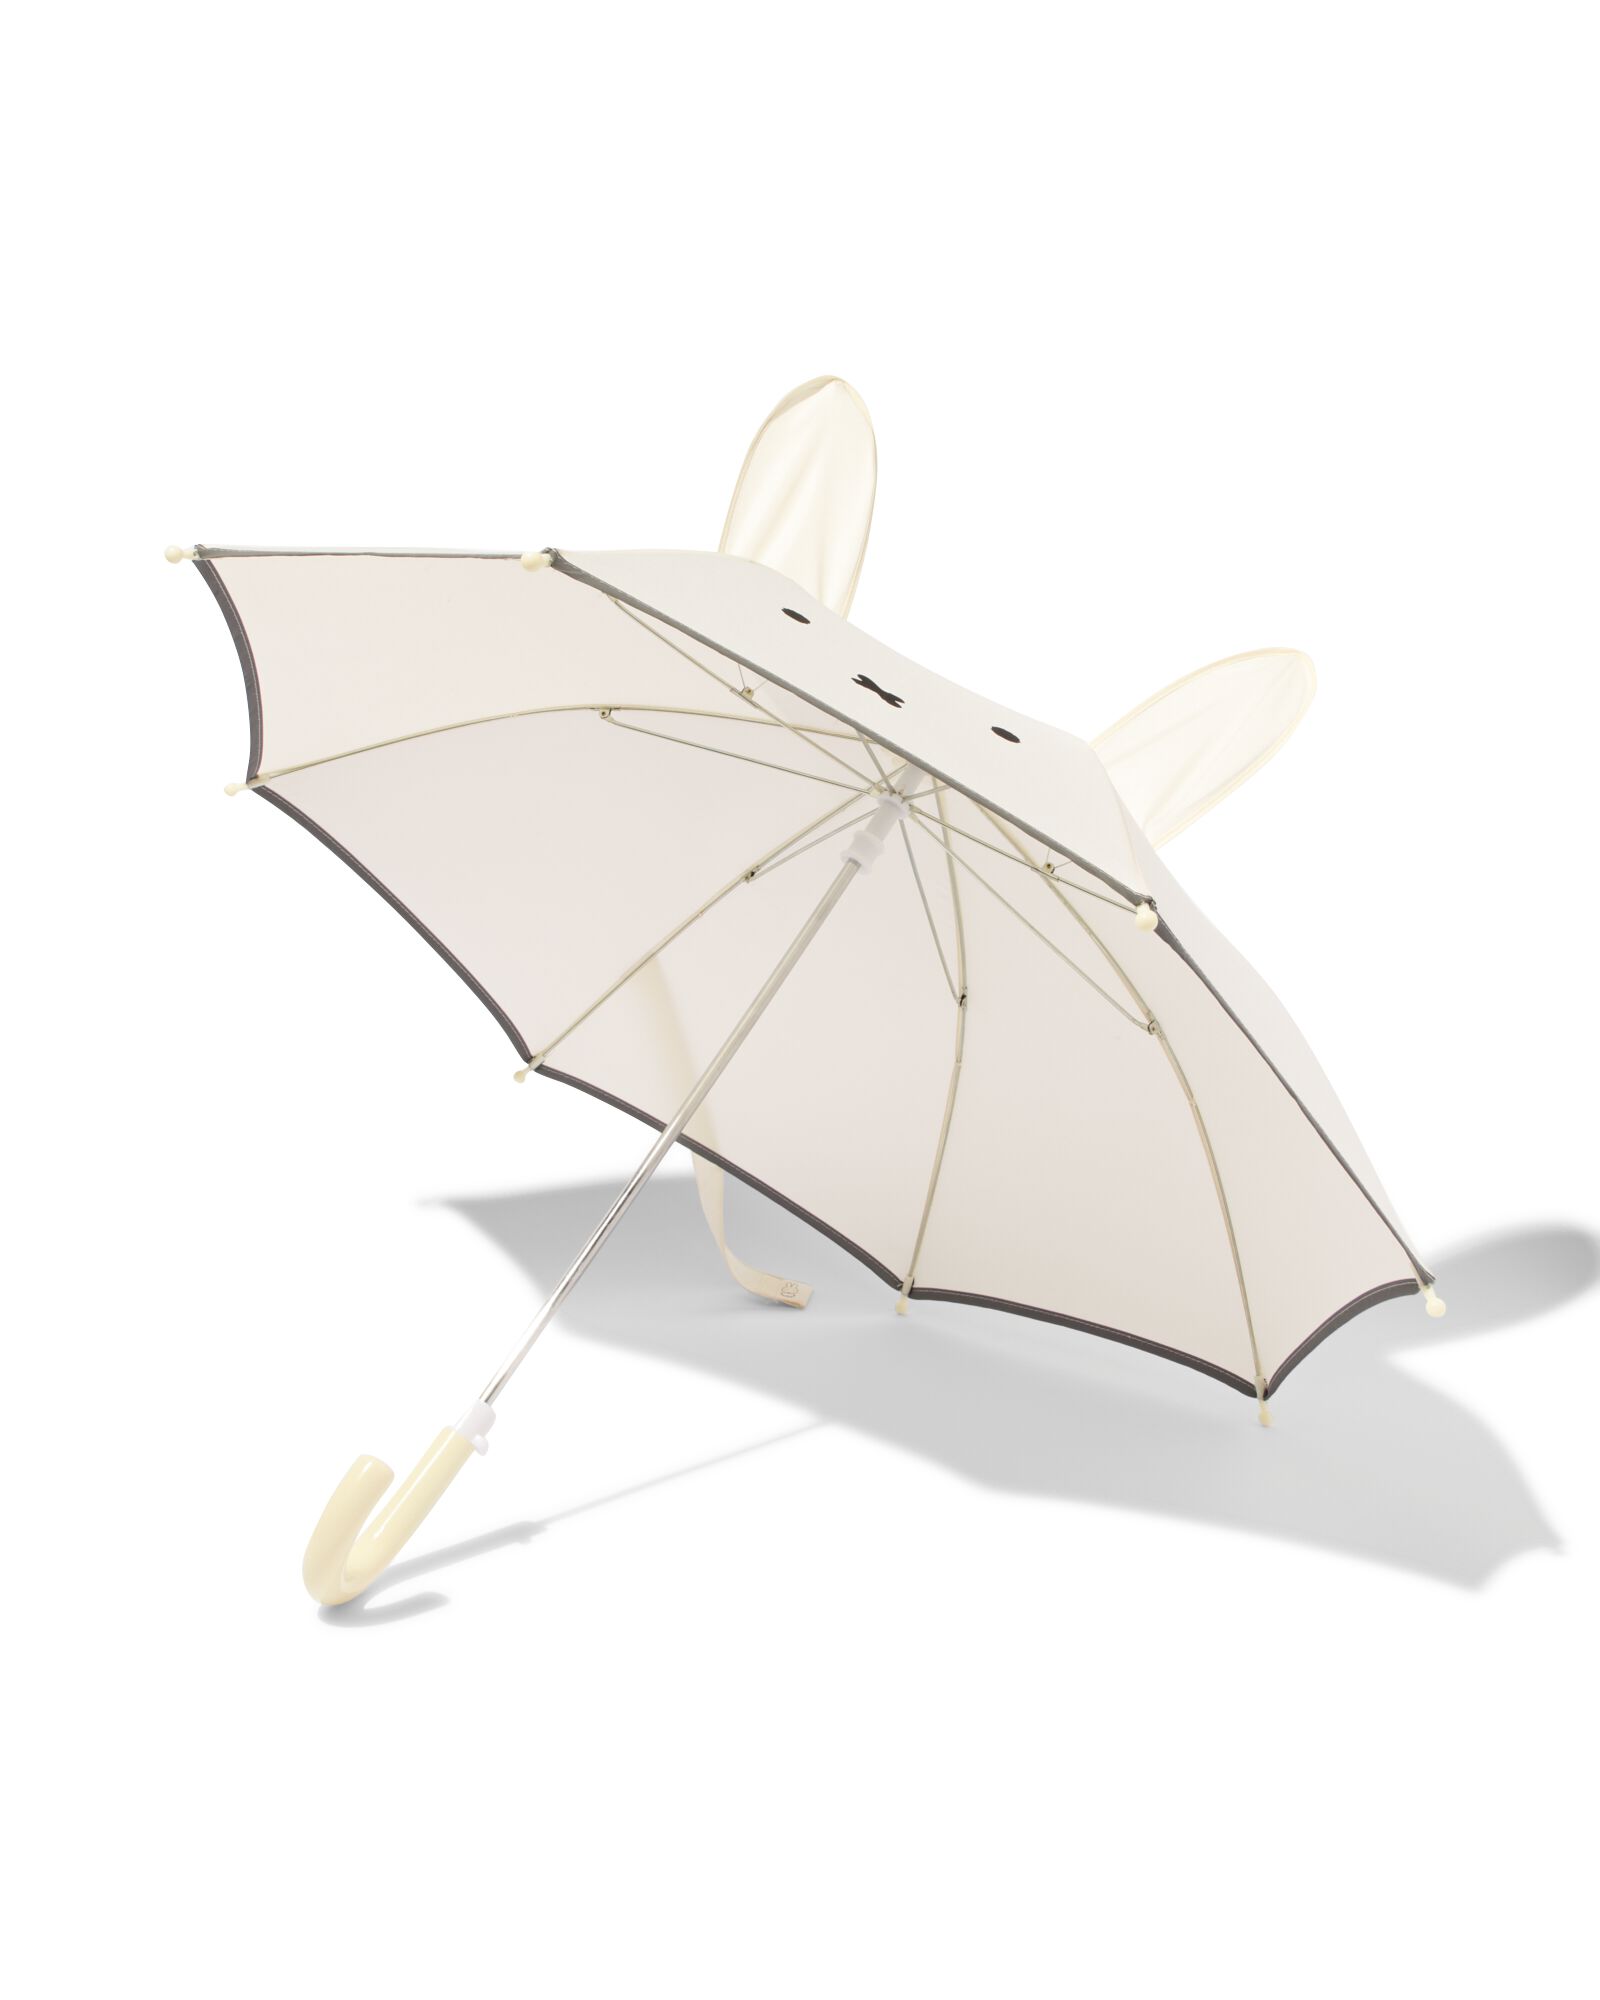 nijntje kinder paraplu met oren - 16830022 - HEMA